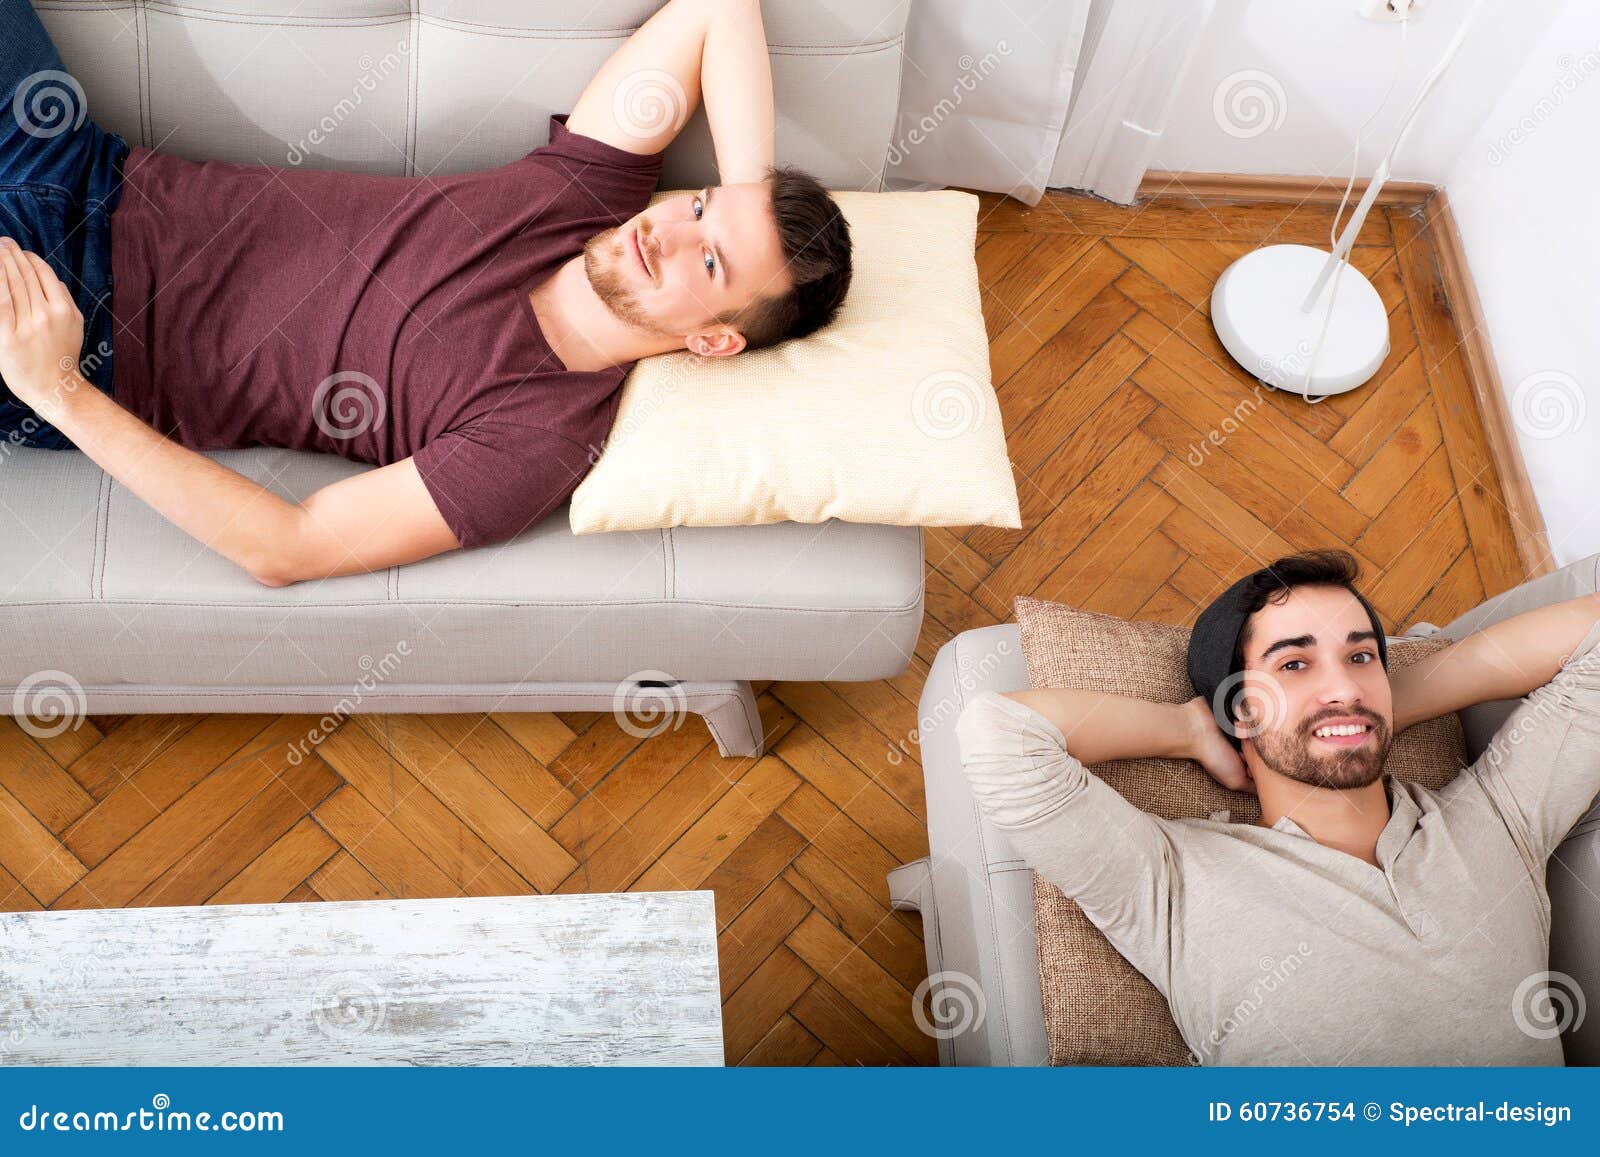 Пока муж отдыхает. Мужчина отдыхает дома. Мужчина отдыхает дома картинки. Фото дивана с лежачим мужчиной. Отдых дома Сток.